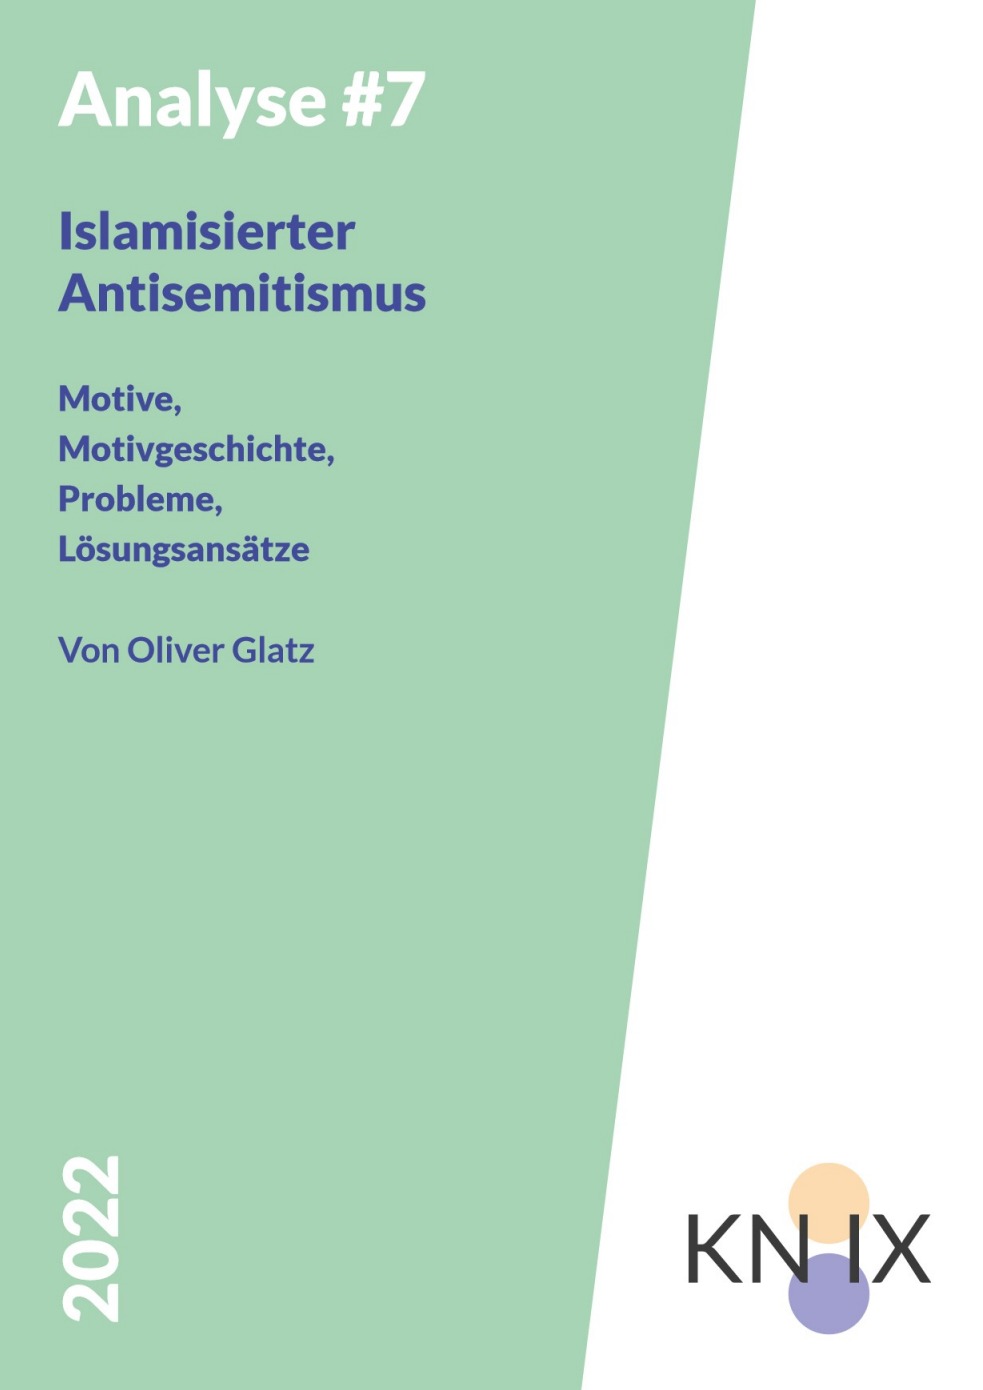 AufIslamismusprävention einem grünen Hintergrund steht der Titel der Broschüre "Islamisierter Antisemitismus"